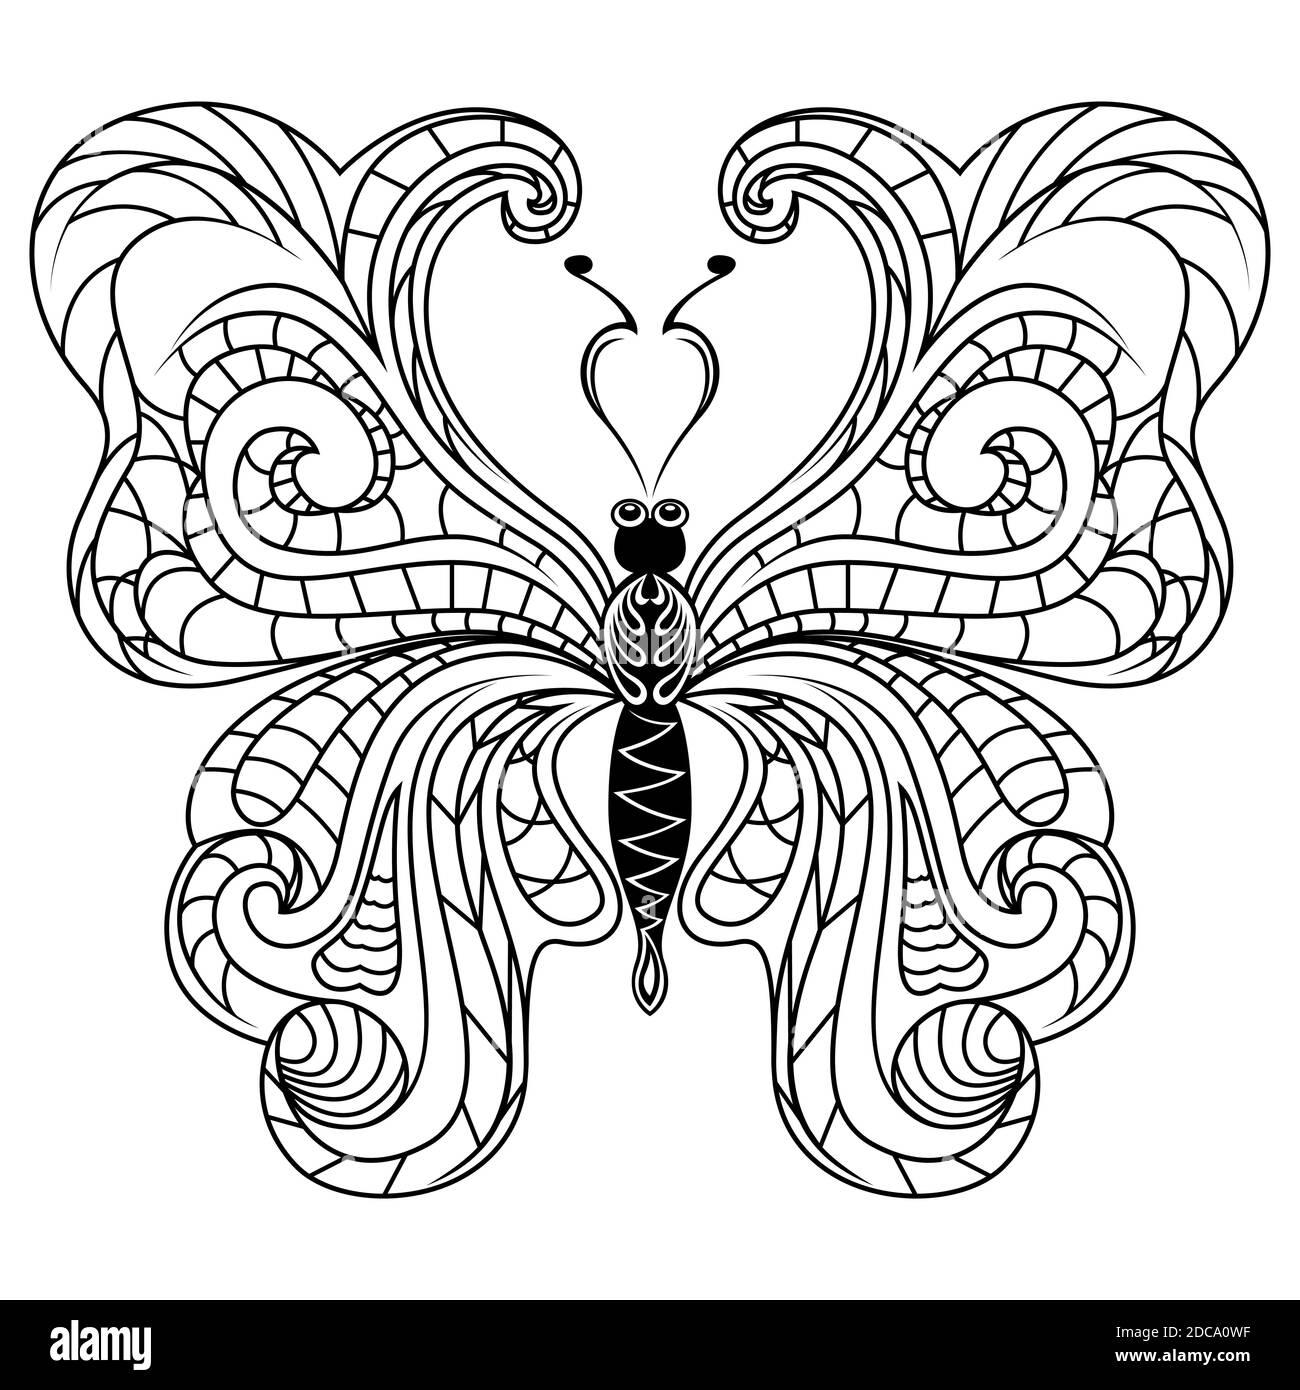 Schwarz dekorative Schablonen der schönen Schmetterling mit weißem Hintergrund, hand Zeichnung Vector Illustration Stock Vektor